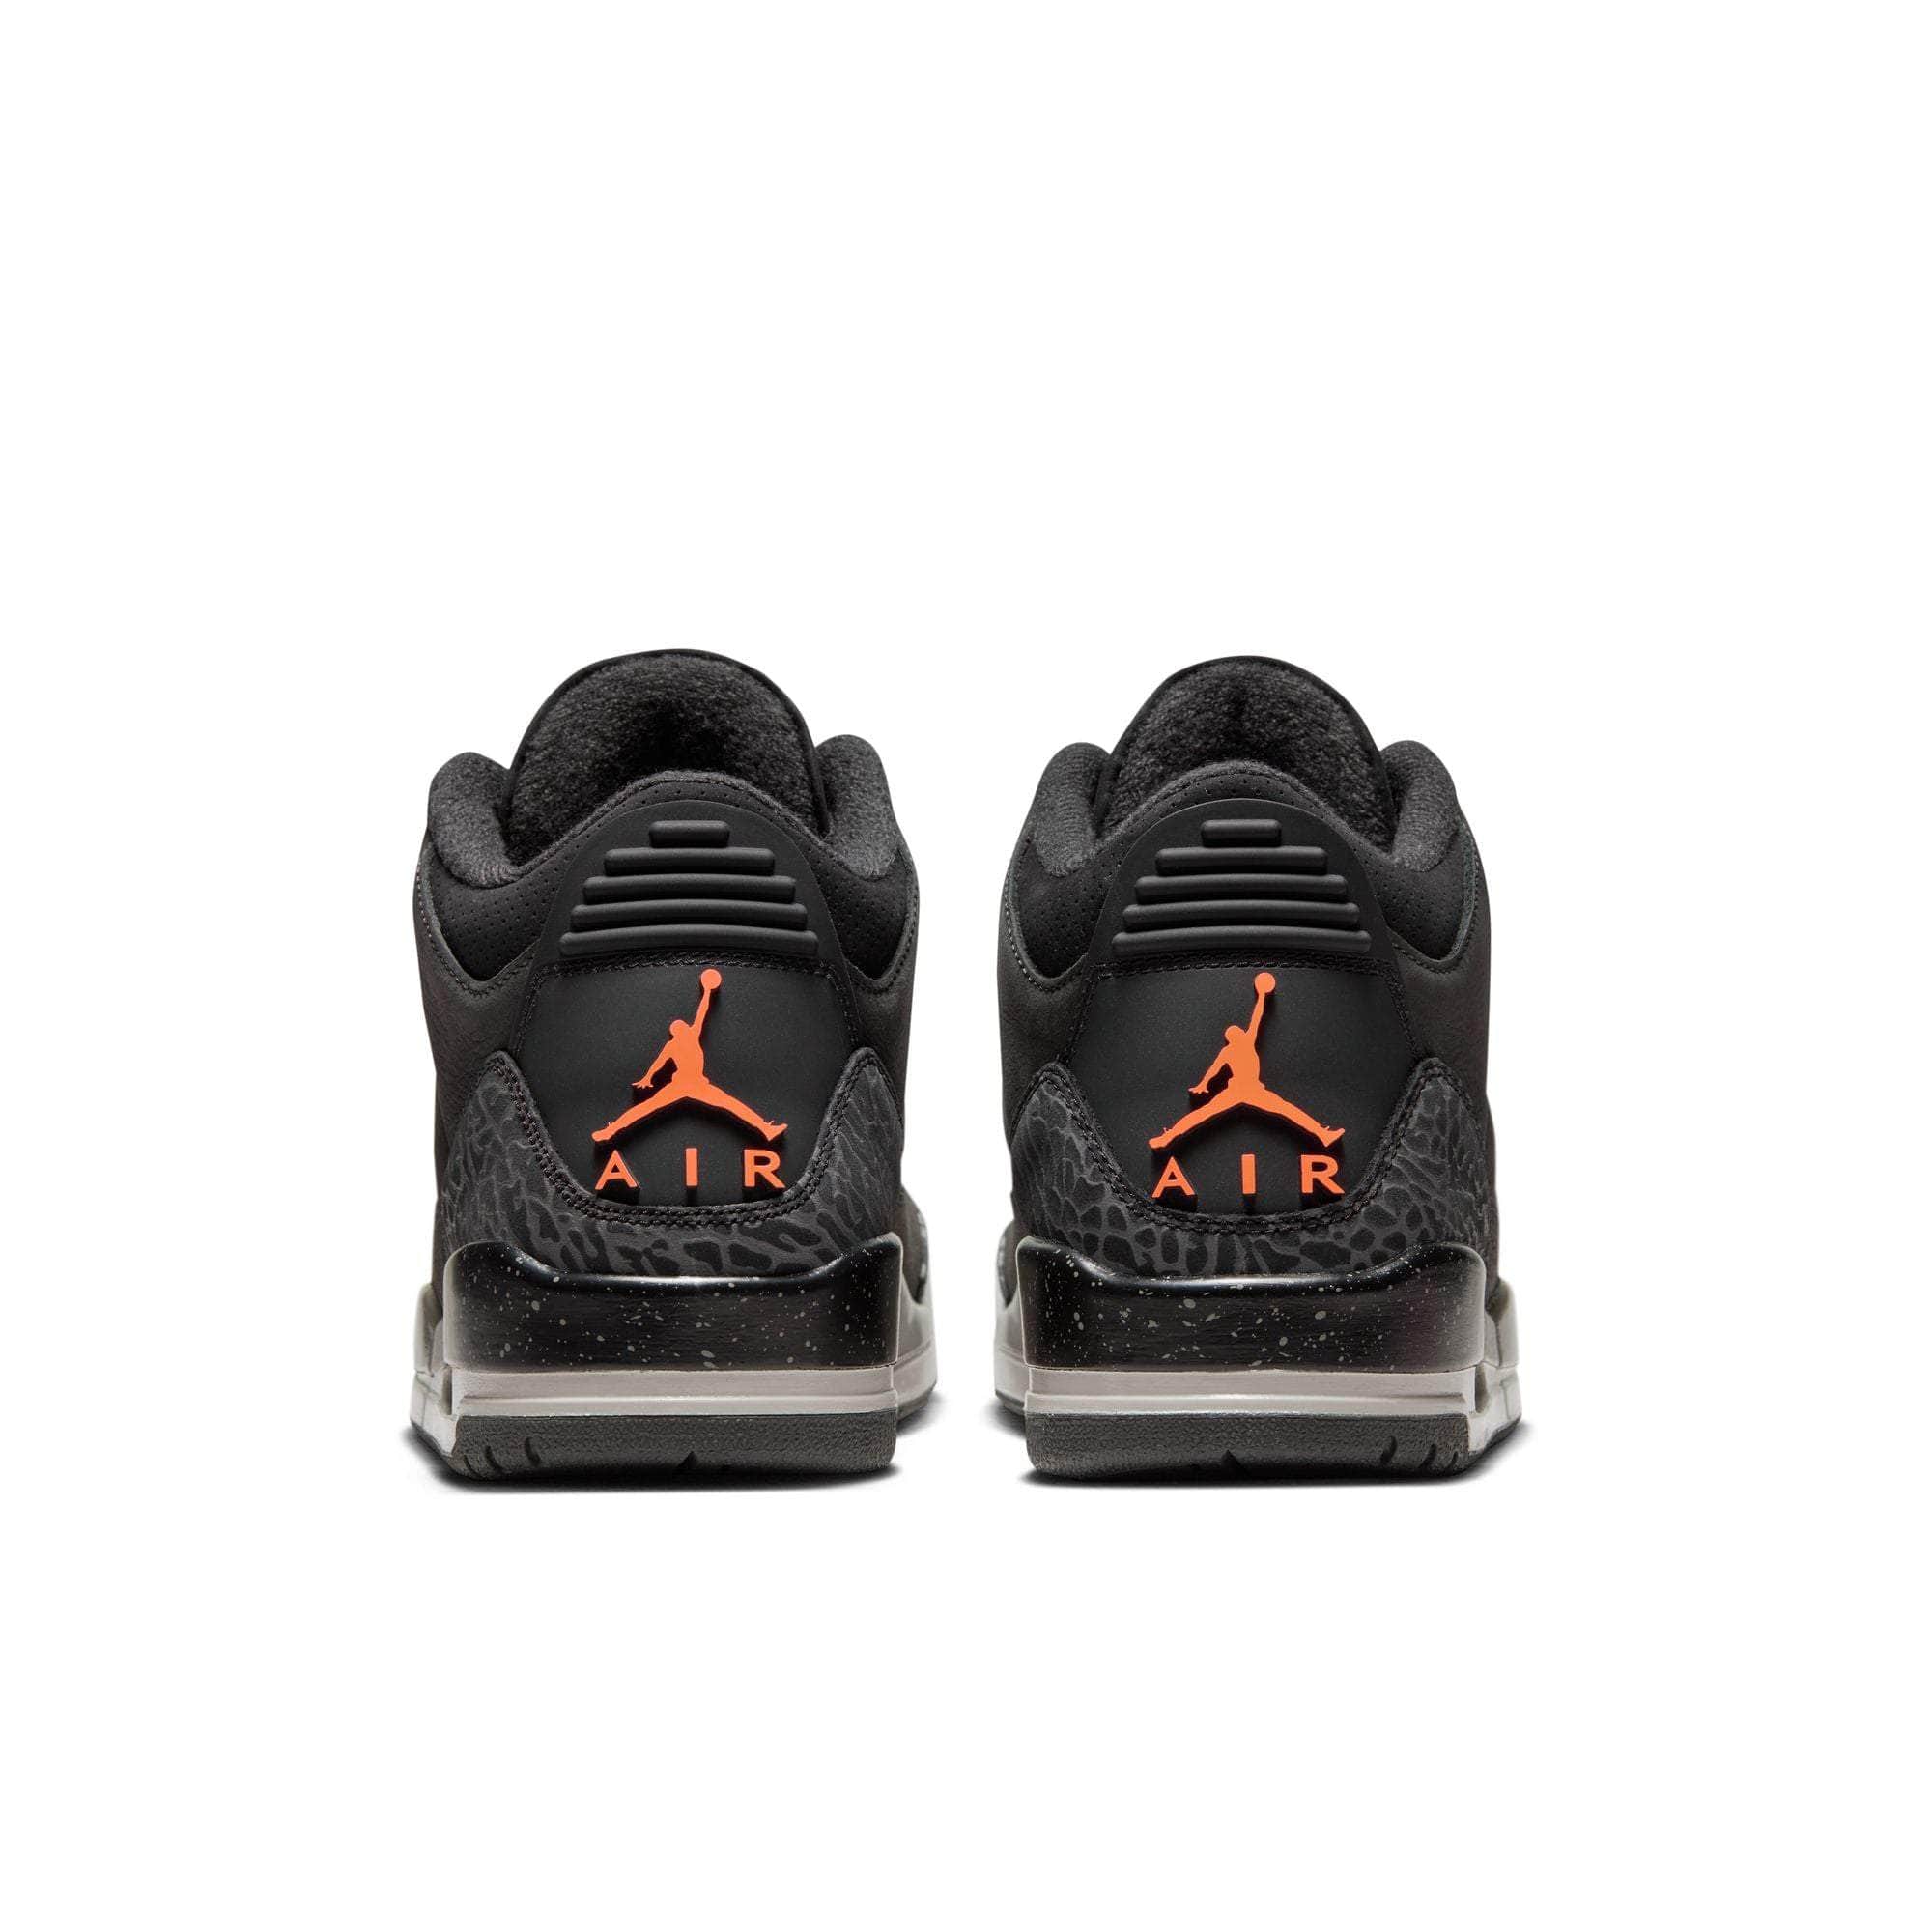 Air Jordan FOOTWEAR Air Jordan 3 Retro "Fear Pack" - Men's